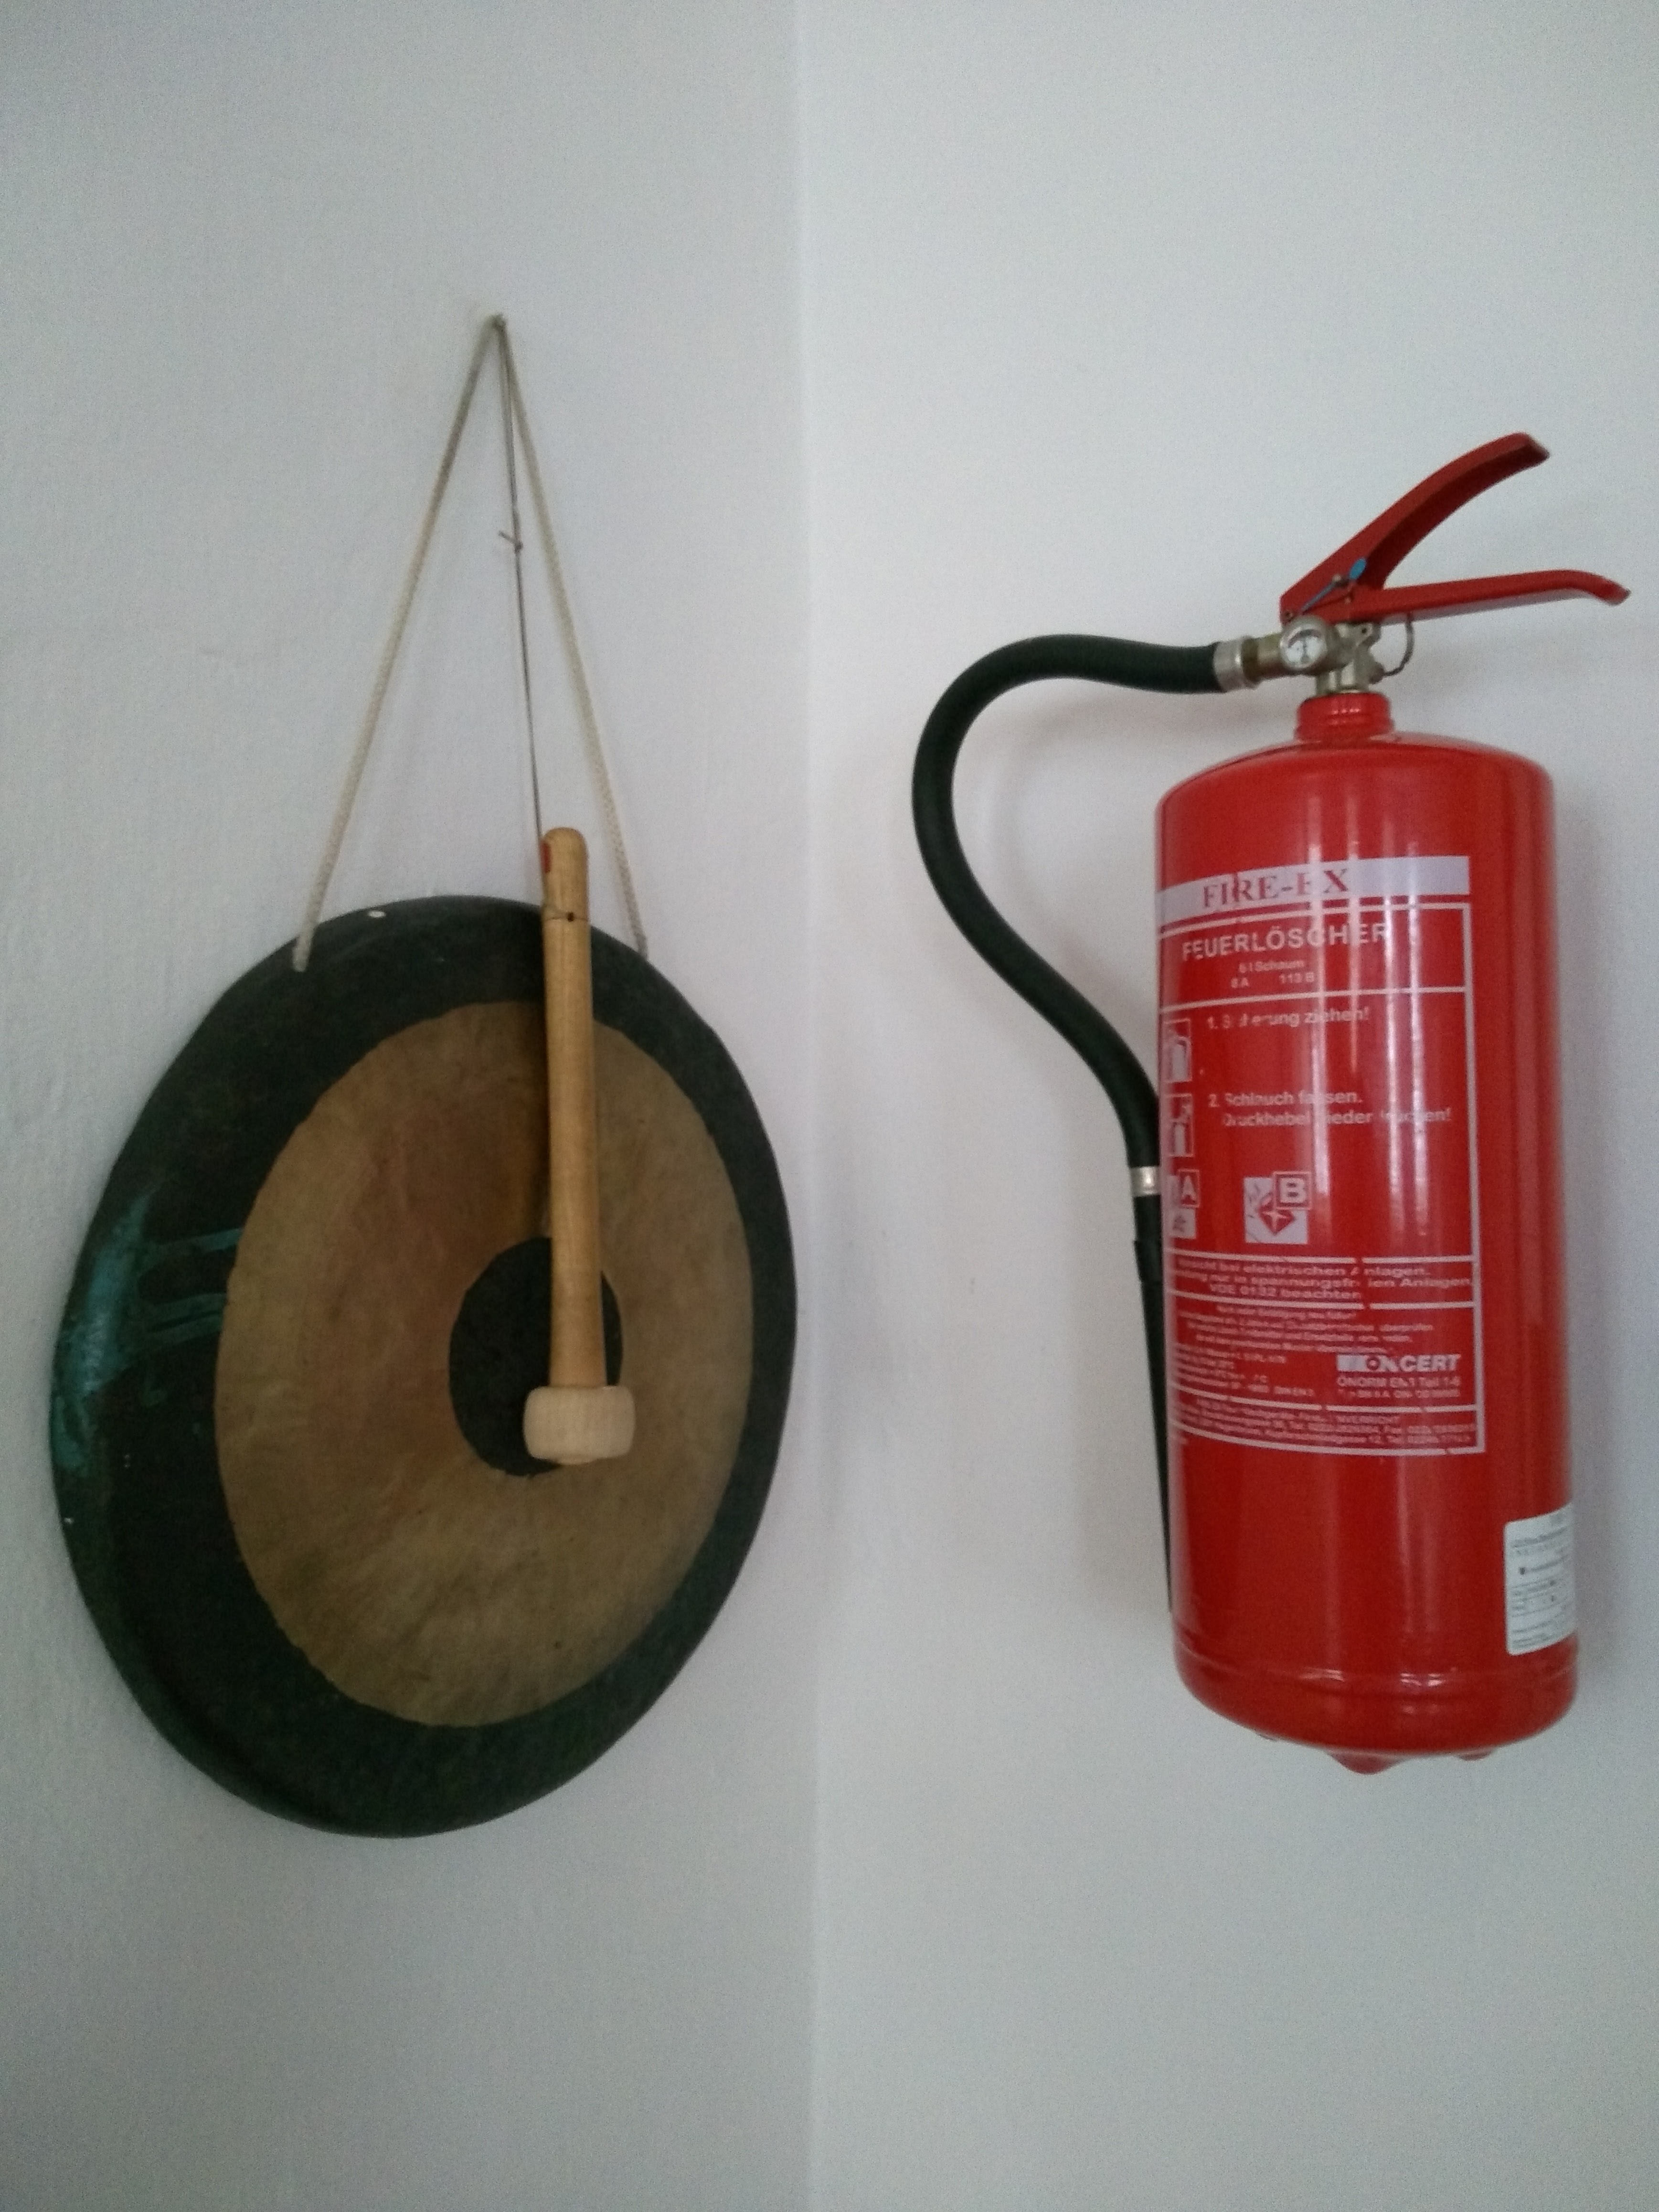 Das Bild zeigt einen Feuerlöscher und einen Gong, die nebeneinander an einer Wand montiert sind.